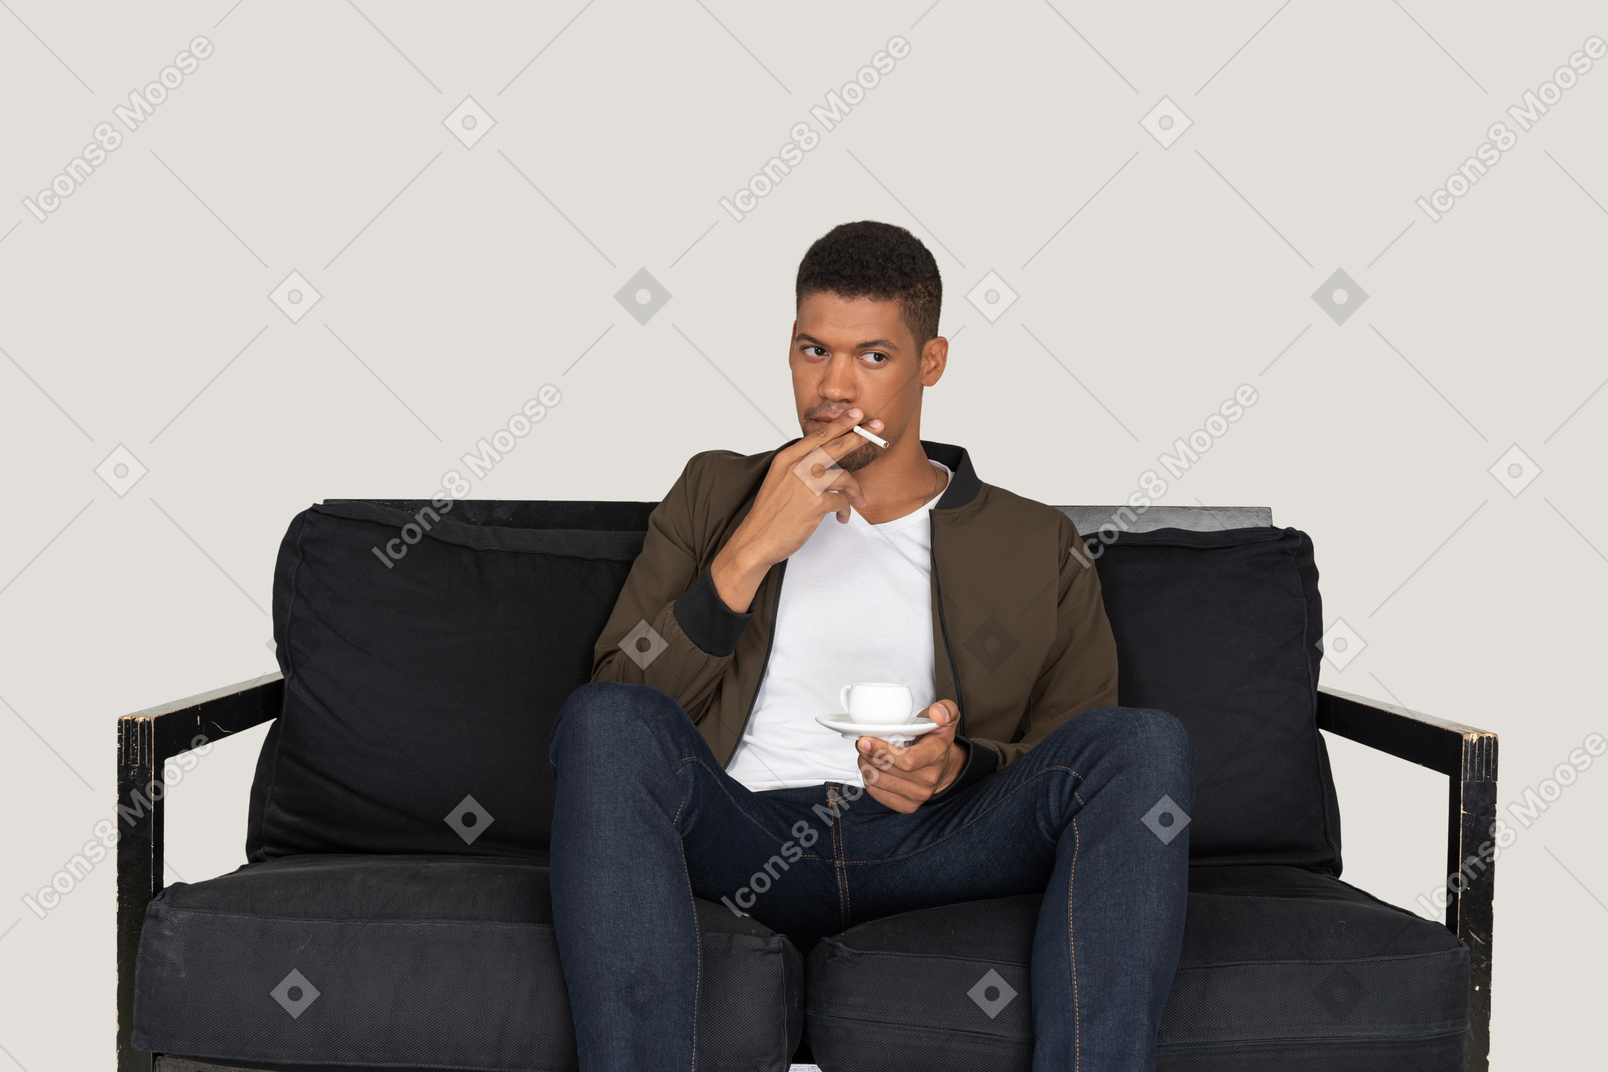 Vista frontal de um jovem sentado em um sofá segurando um cigarro e uma xícara de café